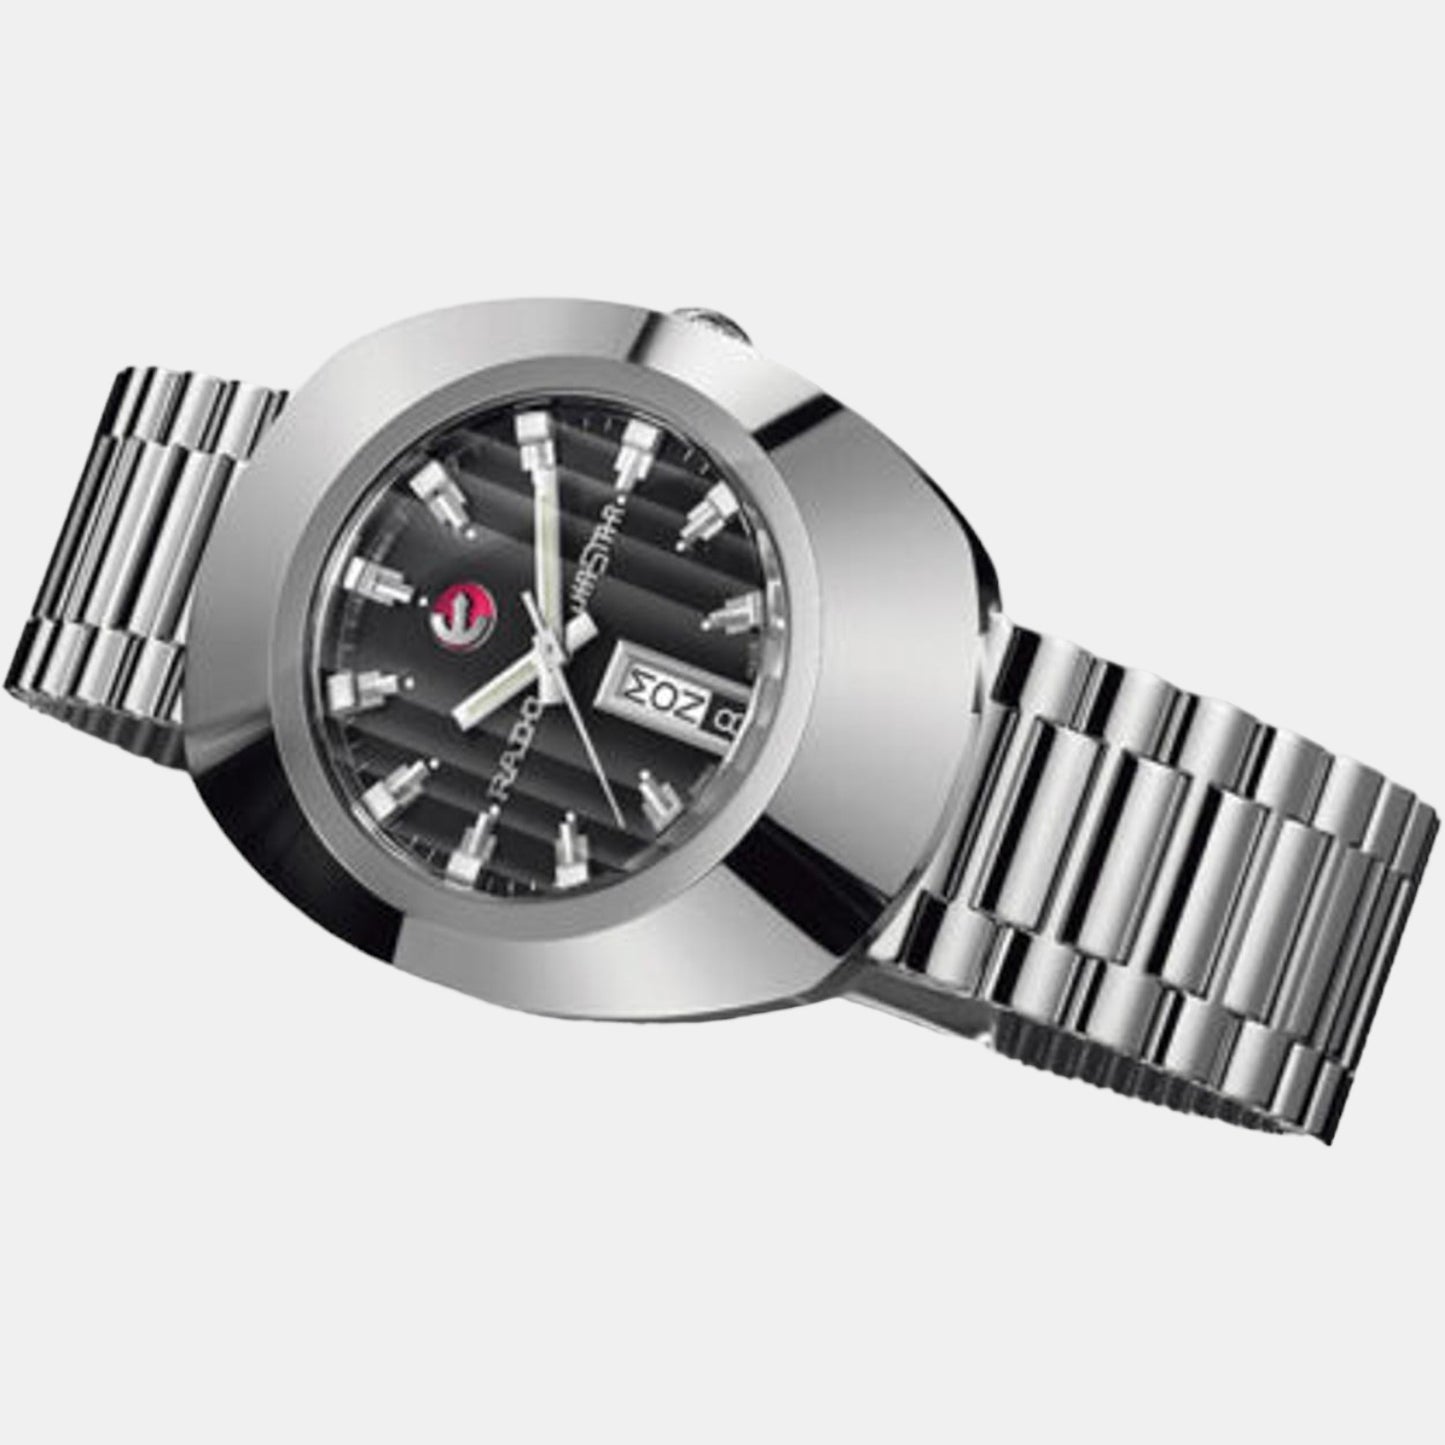 rado-stainless-steel-black-analog-men-watch-r12995153